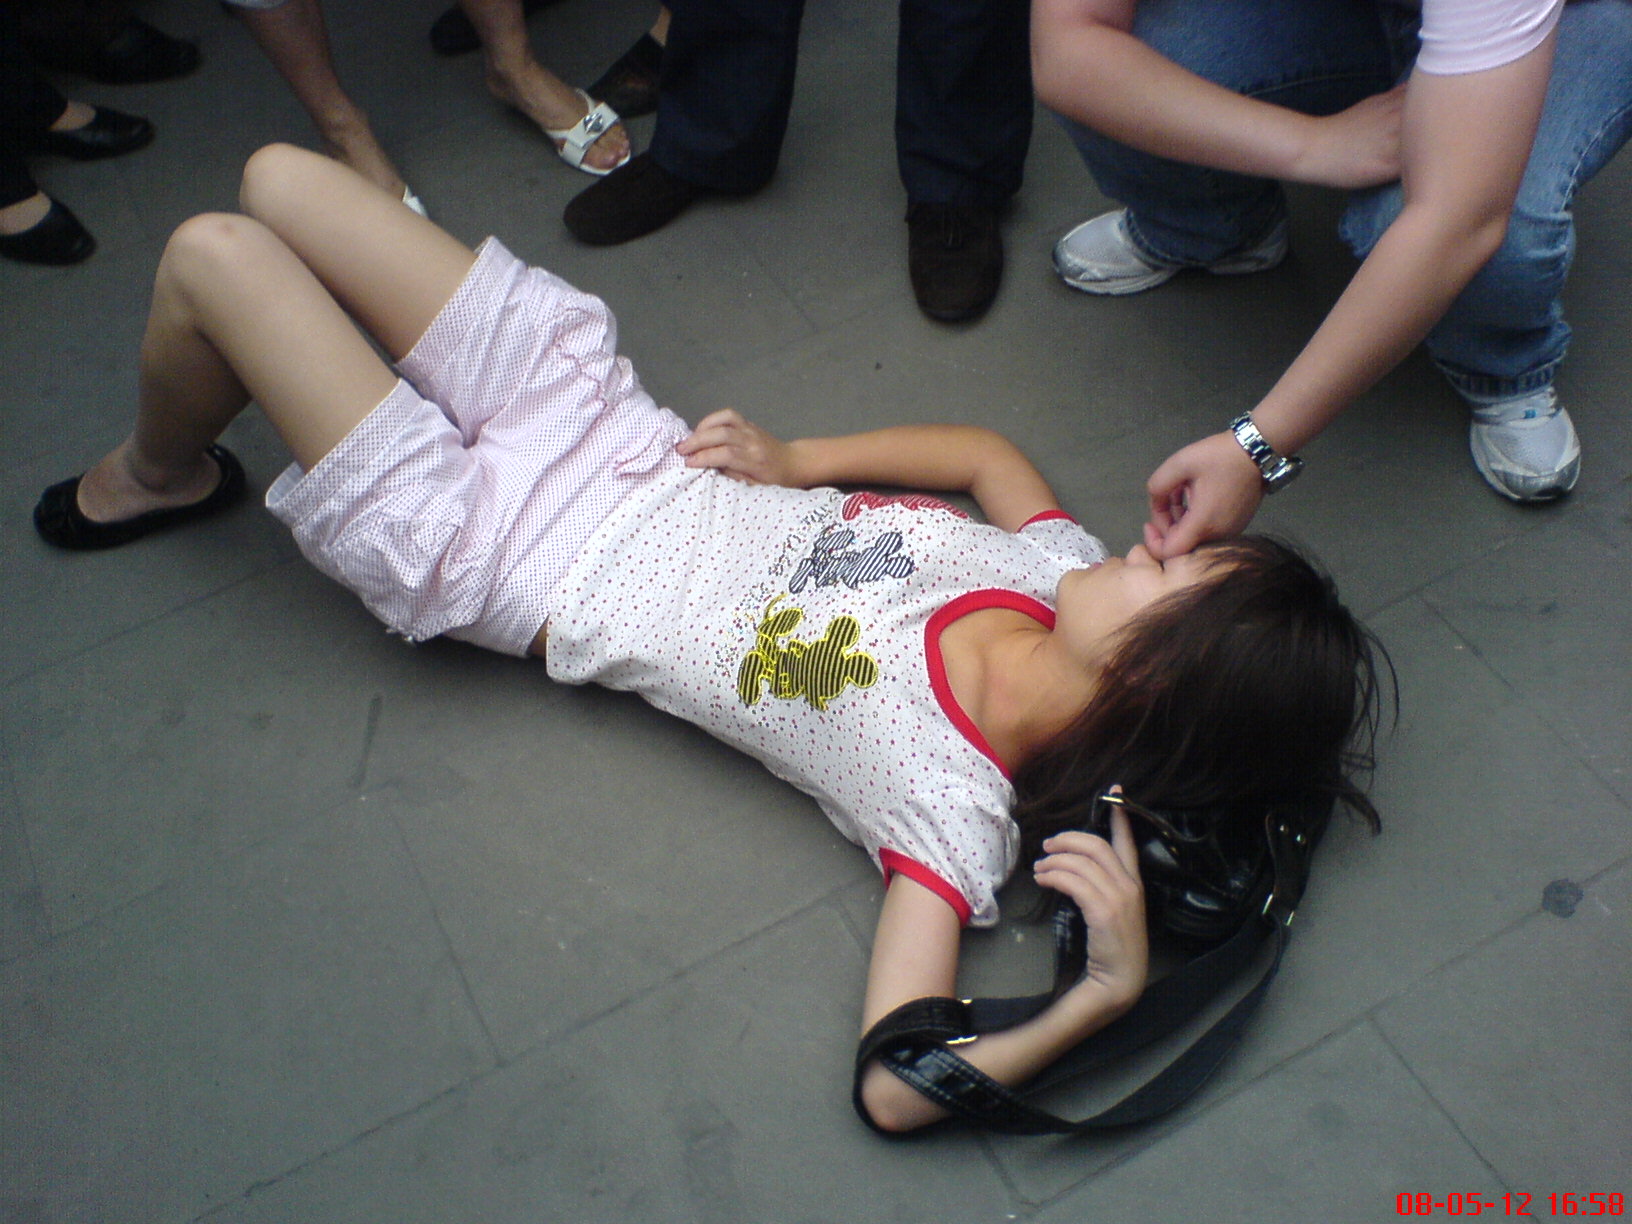 Женщина упала без сознания. Девушка потеряла сознание.